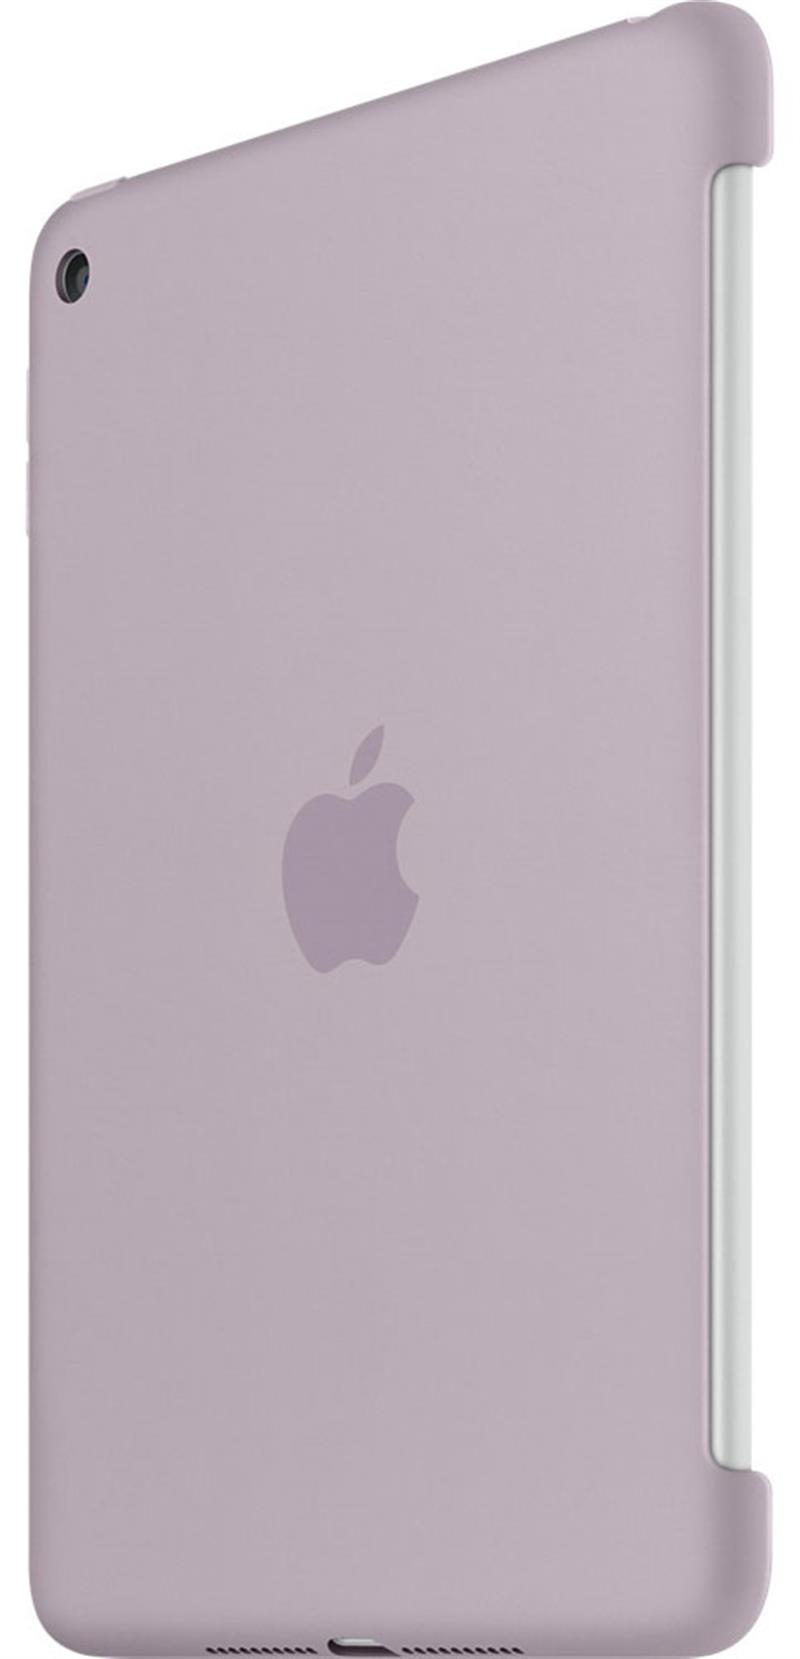 Apple iPad Mini 4 Silicone Case Lavender 